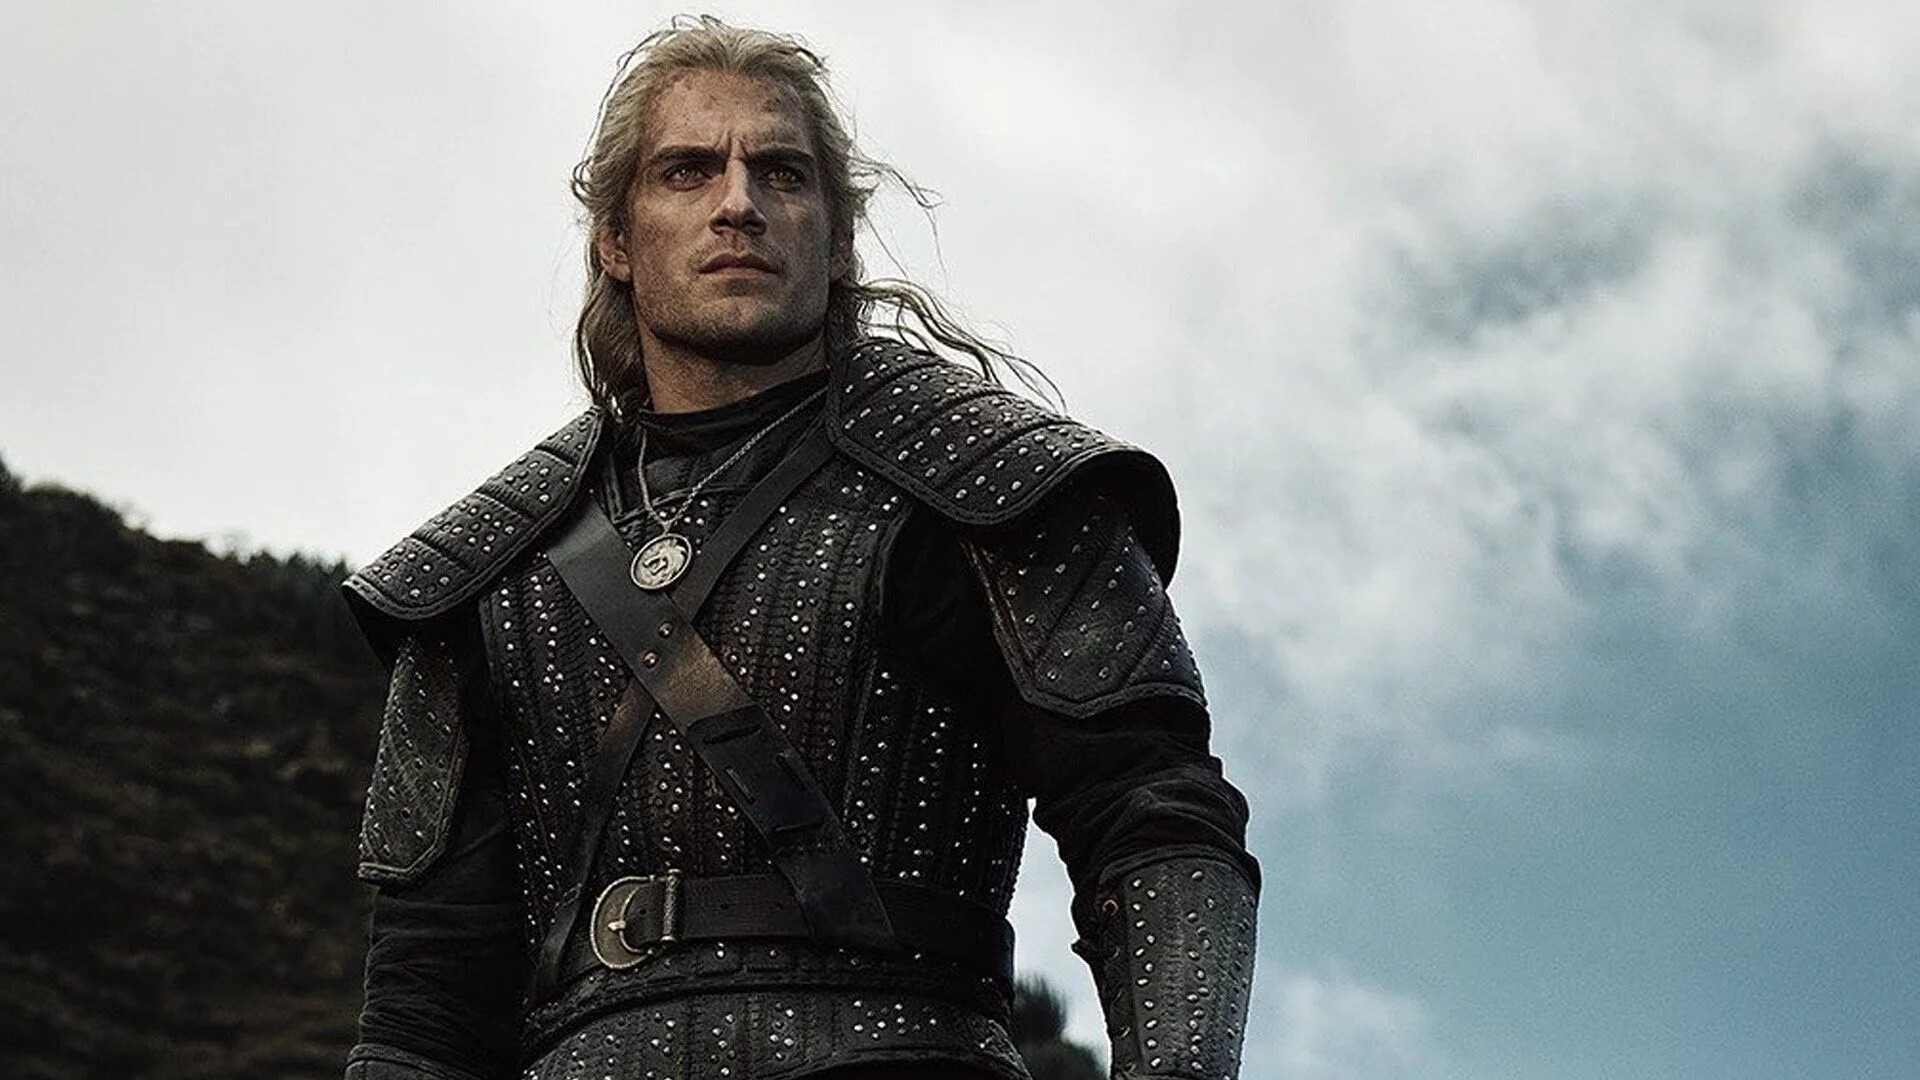 The Witcher Season 2: Netflix TV series, Henry Cavill as Geralt of Rivia. 1920x1080 Full HD Wallpaper.